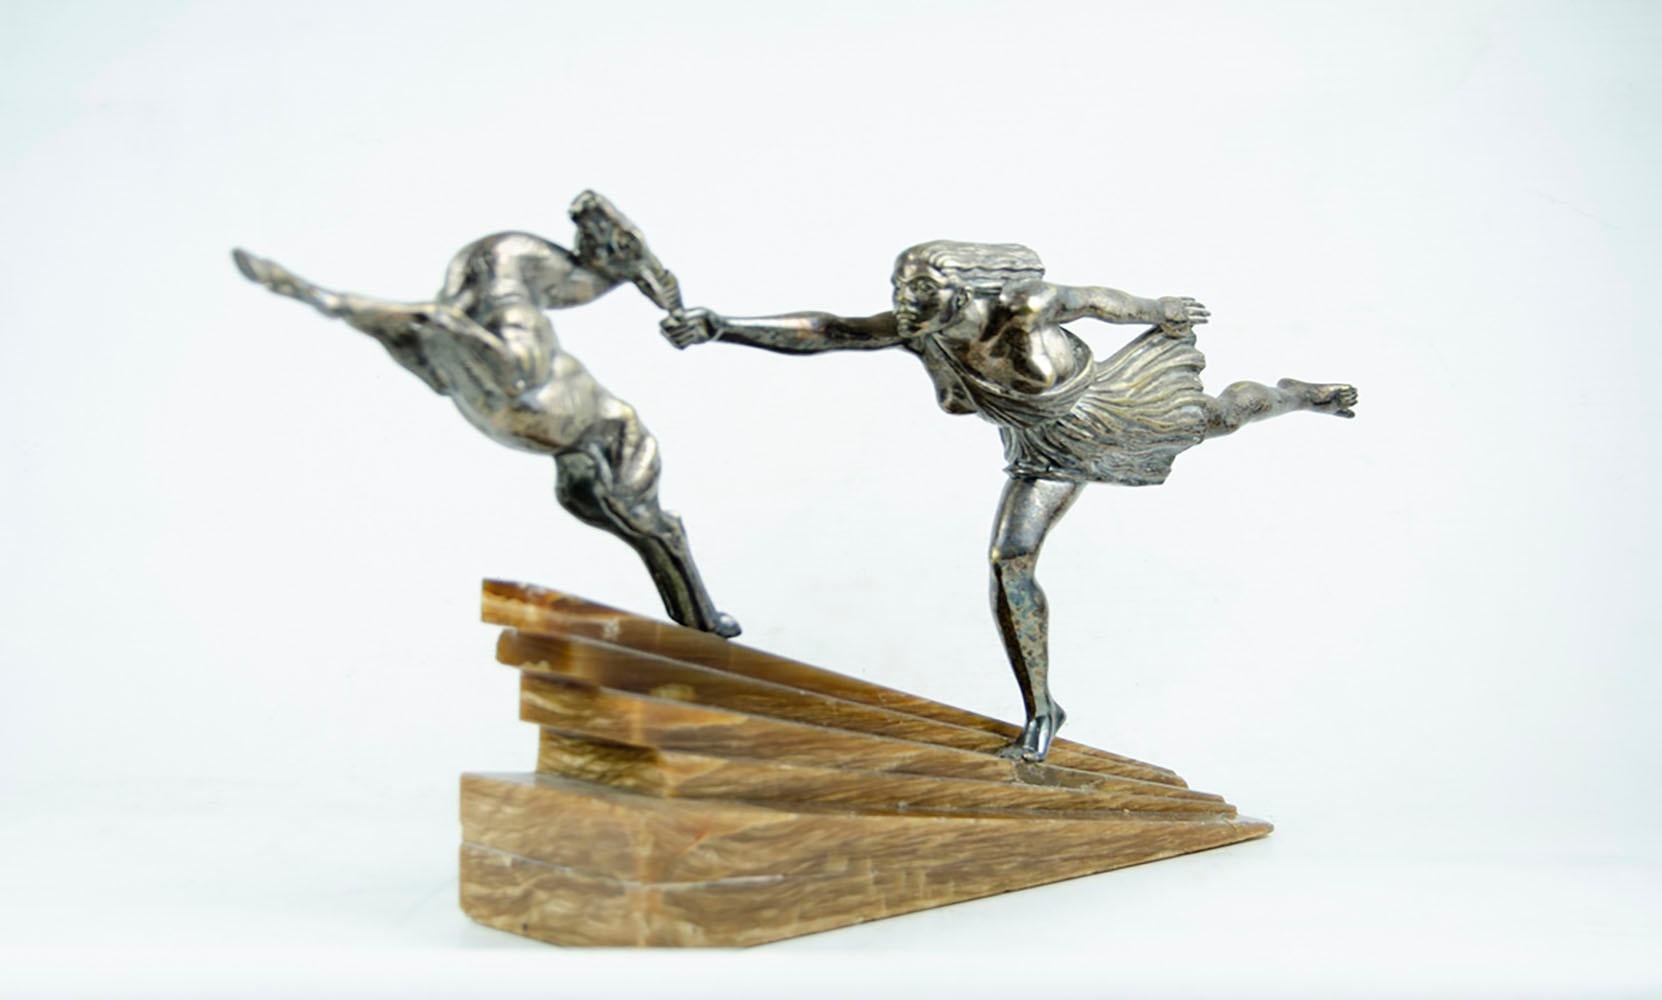 Versilbertes Bronze Art Deco Statuenpaar mit einer Frau, die das Geweih eines Hirsches ergreift, eine seltene Version von 